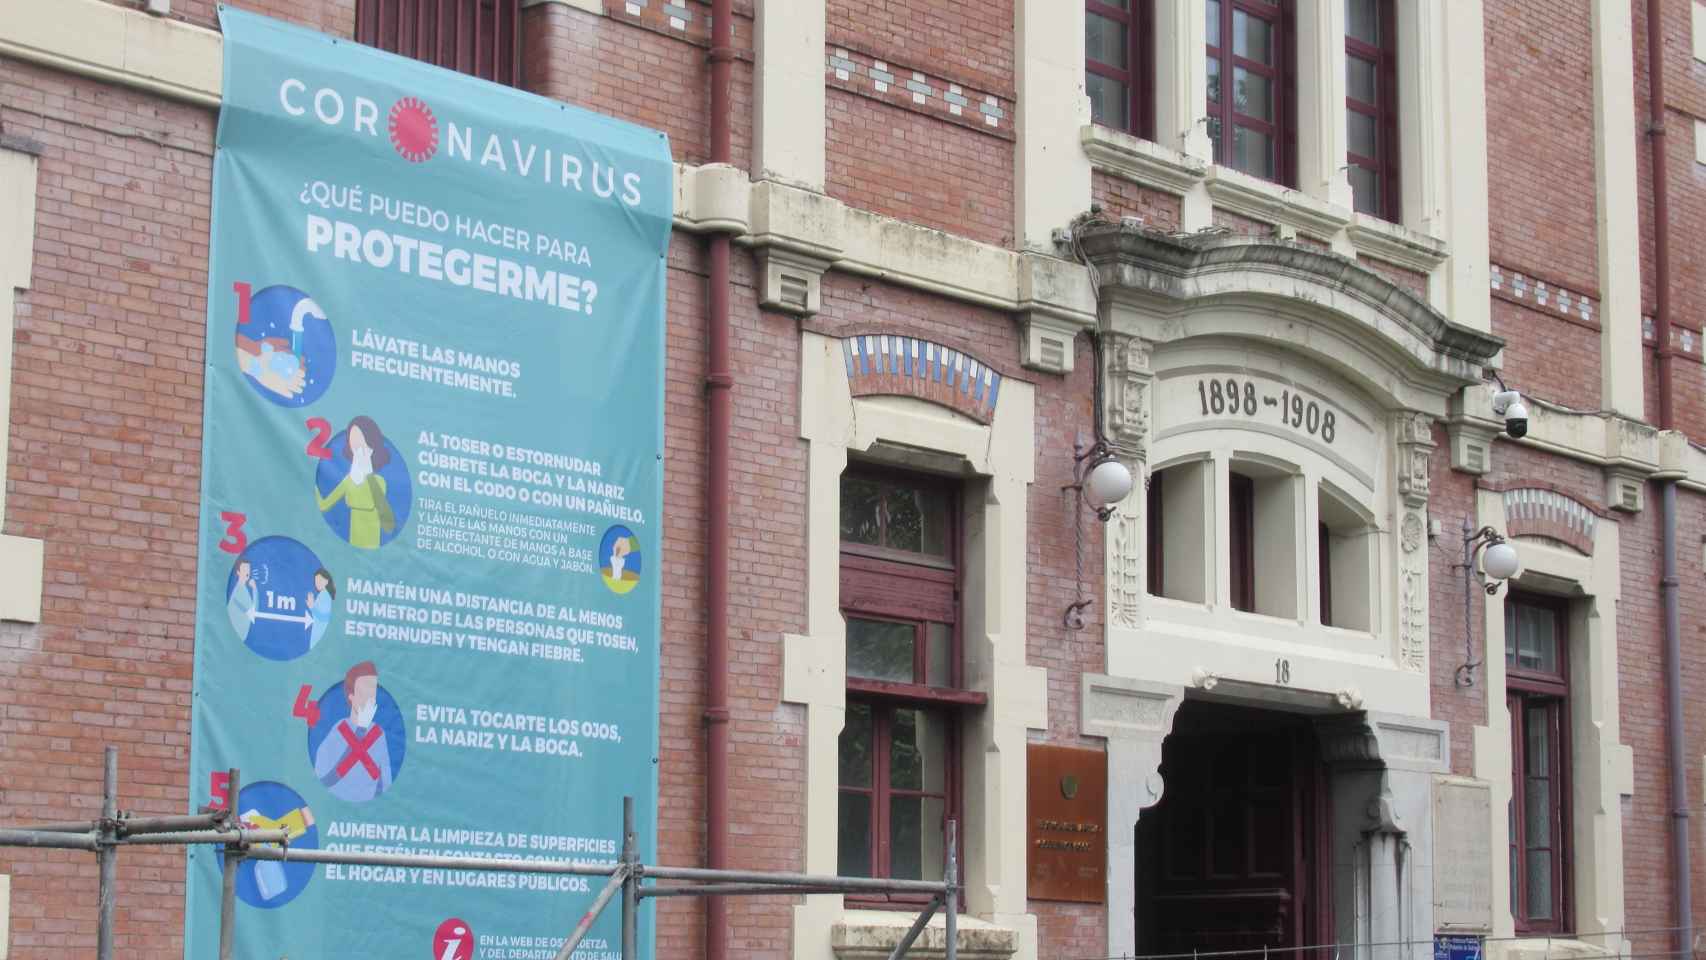 Cartel informativo sobre el coronavirus en la fachada del hospital de Basurto, en Bilbao.